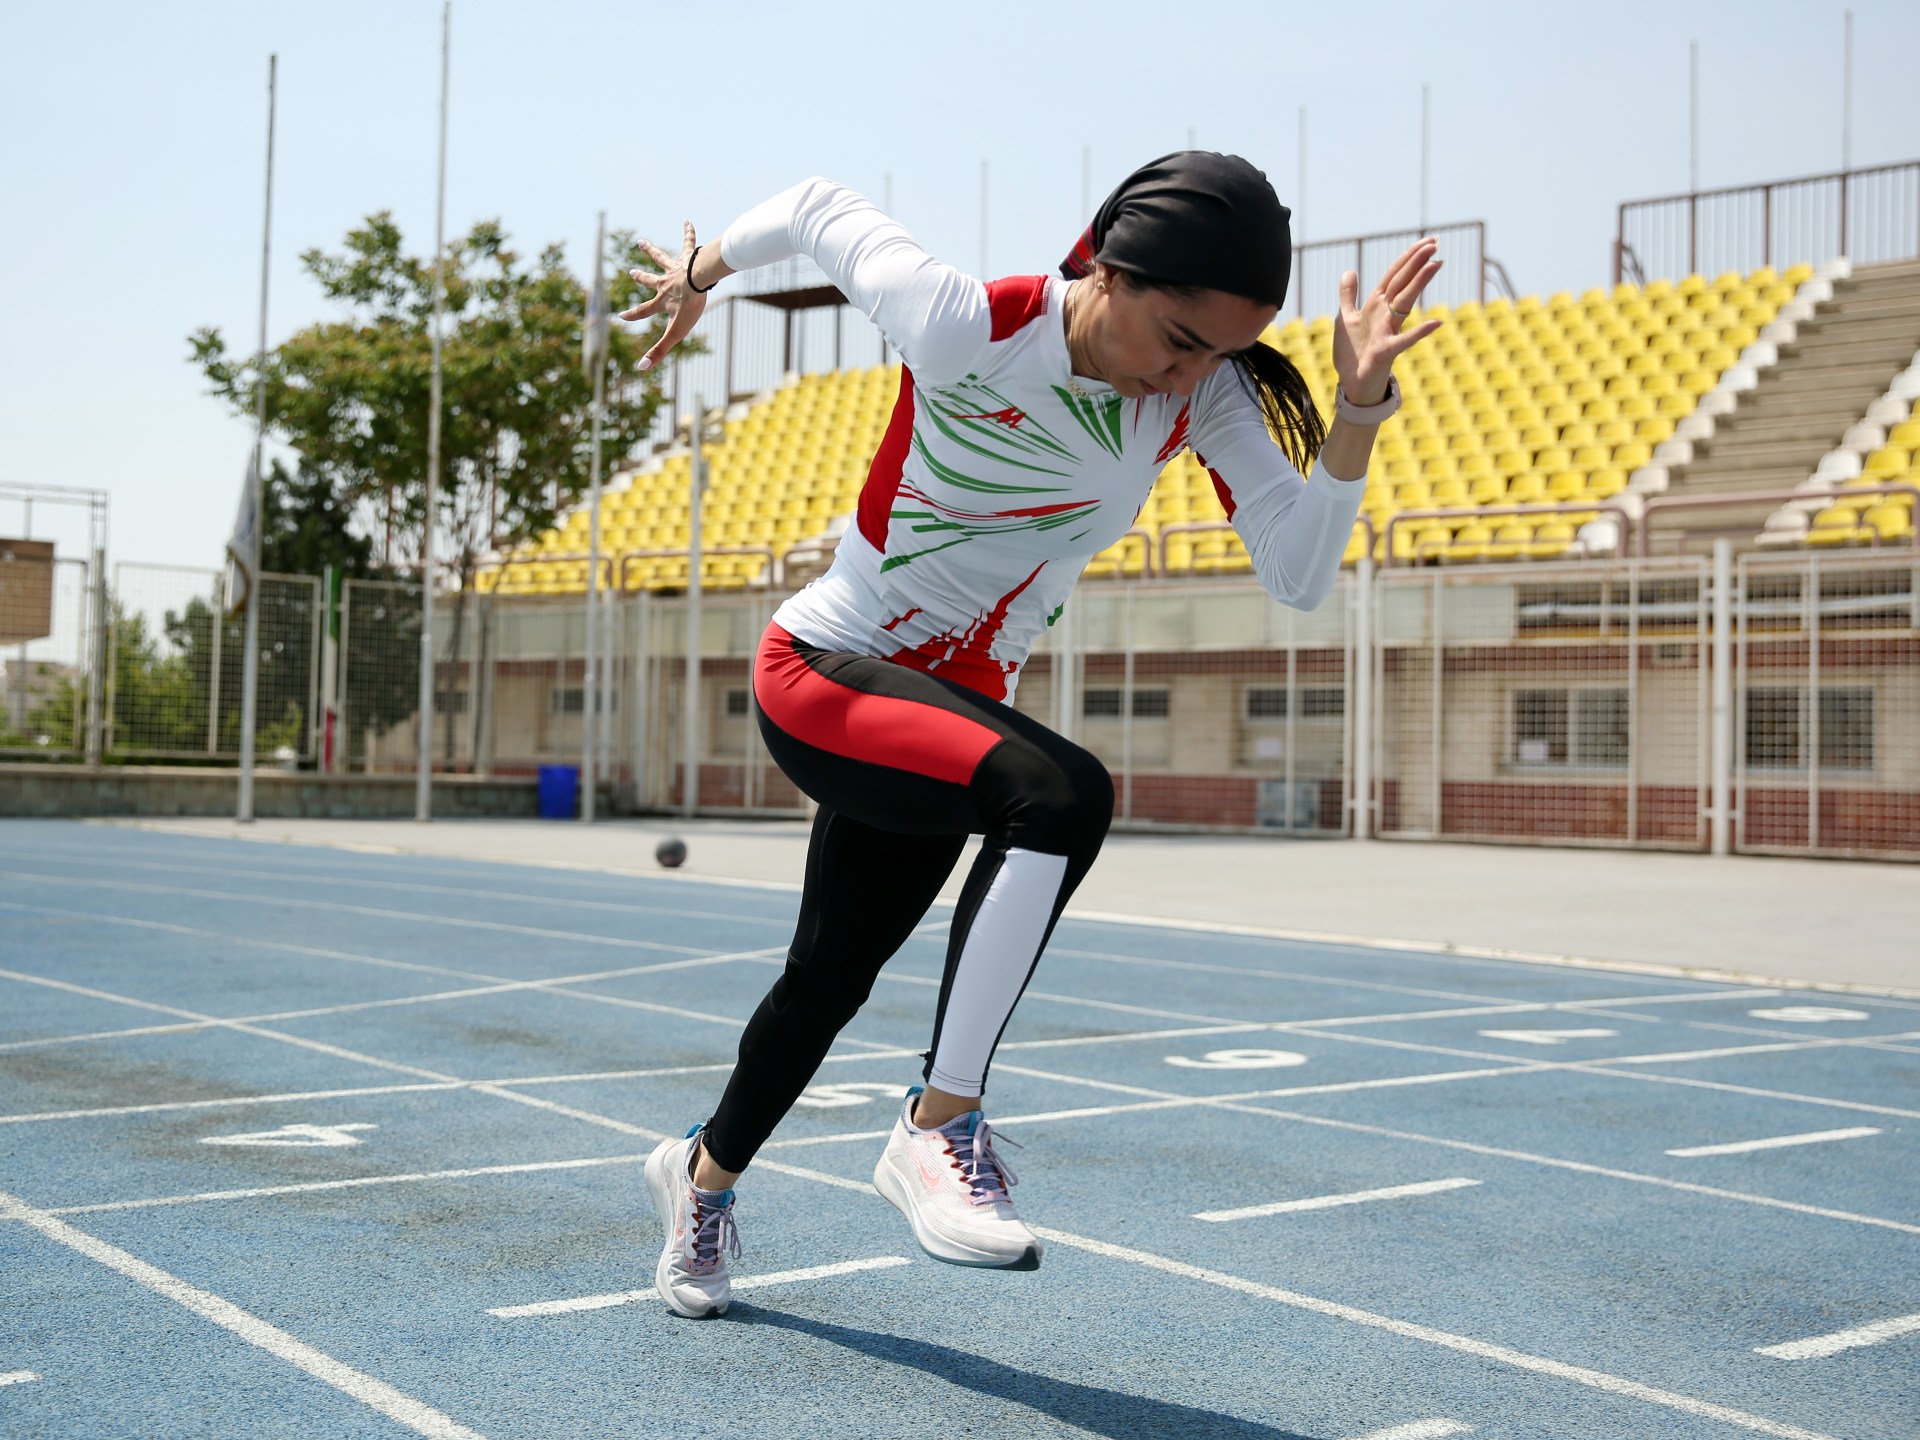 أولمبياد باريس 2024: فرزانة فصيحي – عداءة إيرانية تحطم الرقم القياسي في سباق 100 متر | أخبار أولمبياد باريس 2024